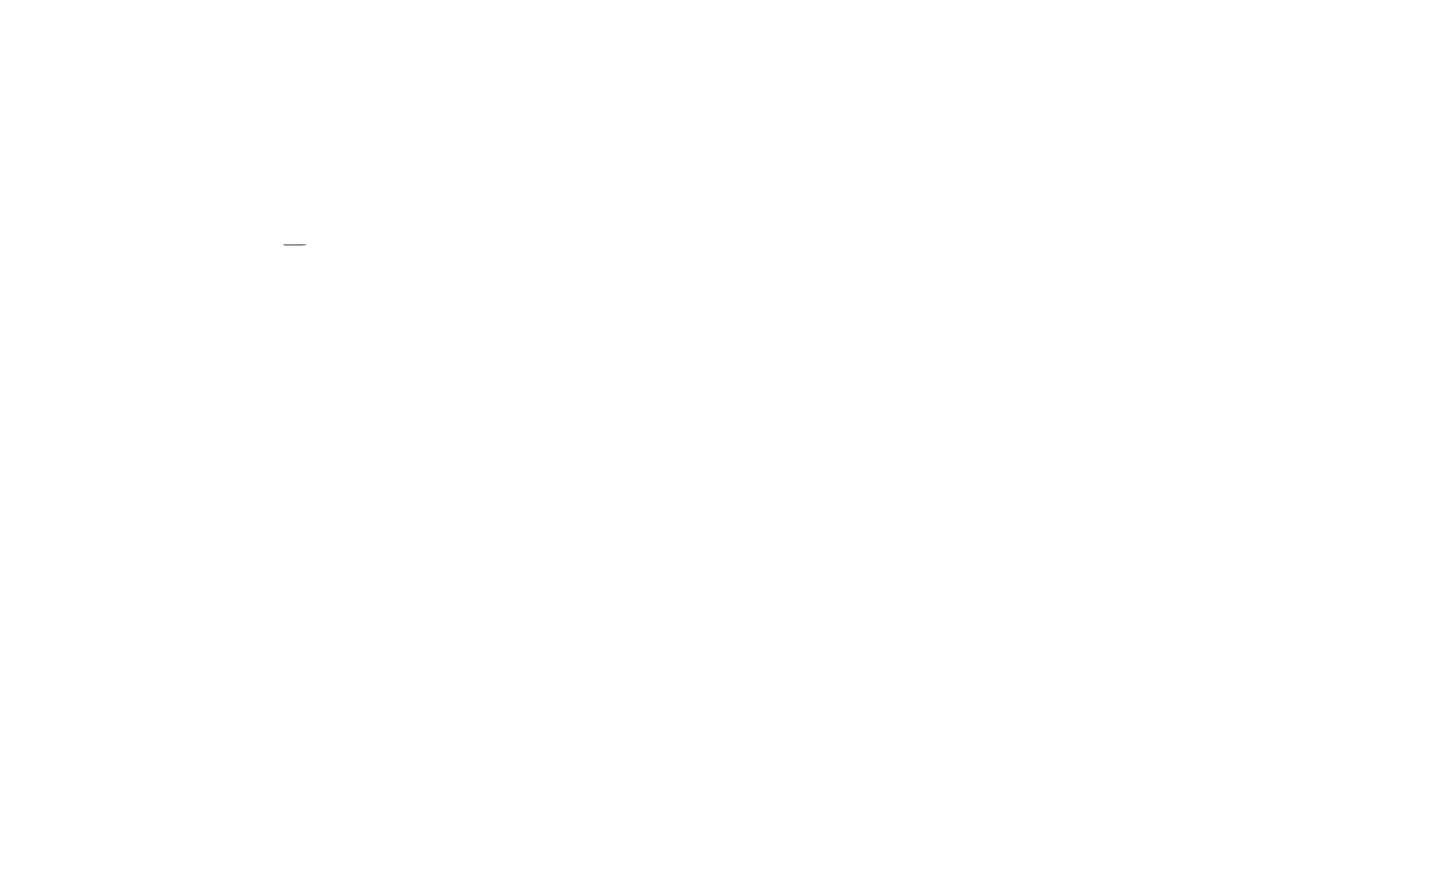 BE HOPPY